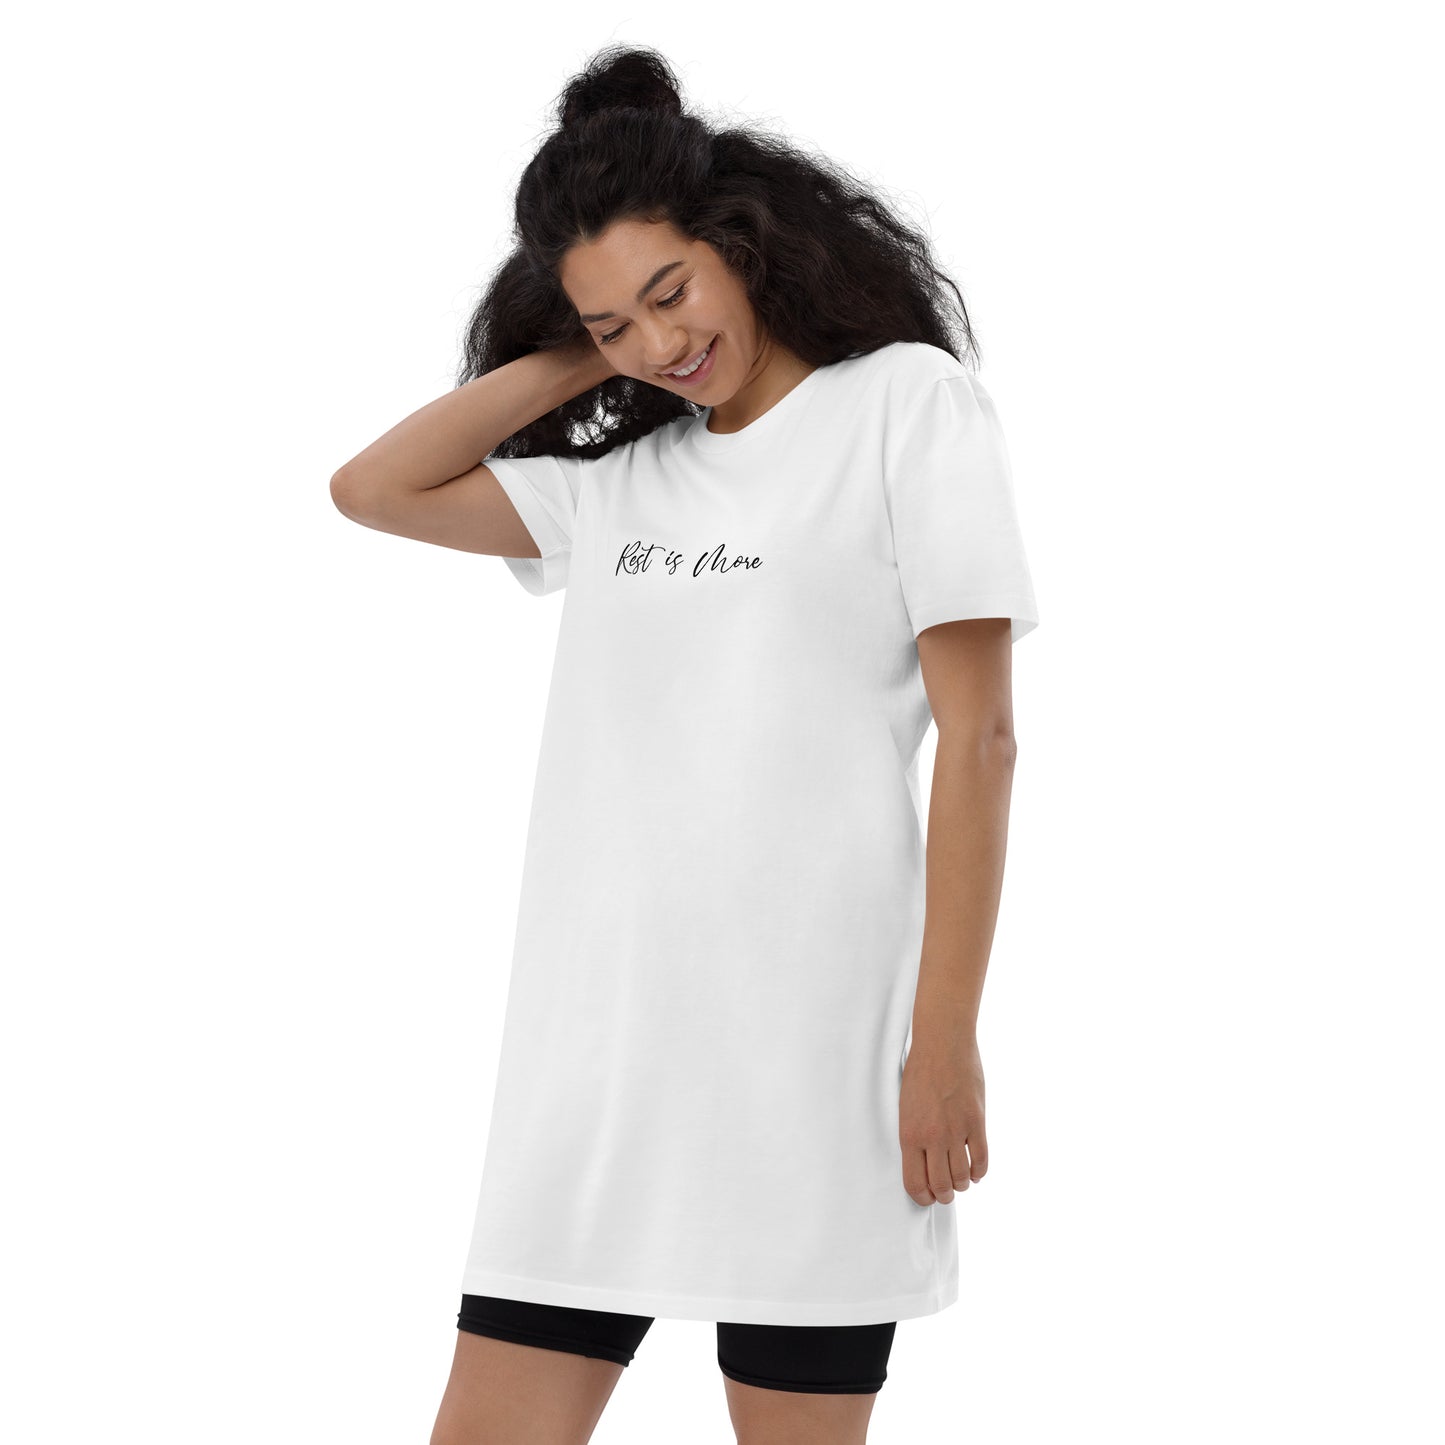 Rest Is More Women's 100% Organic Cotton T-Shirt Dress Loungewear